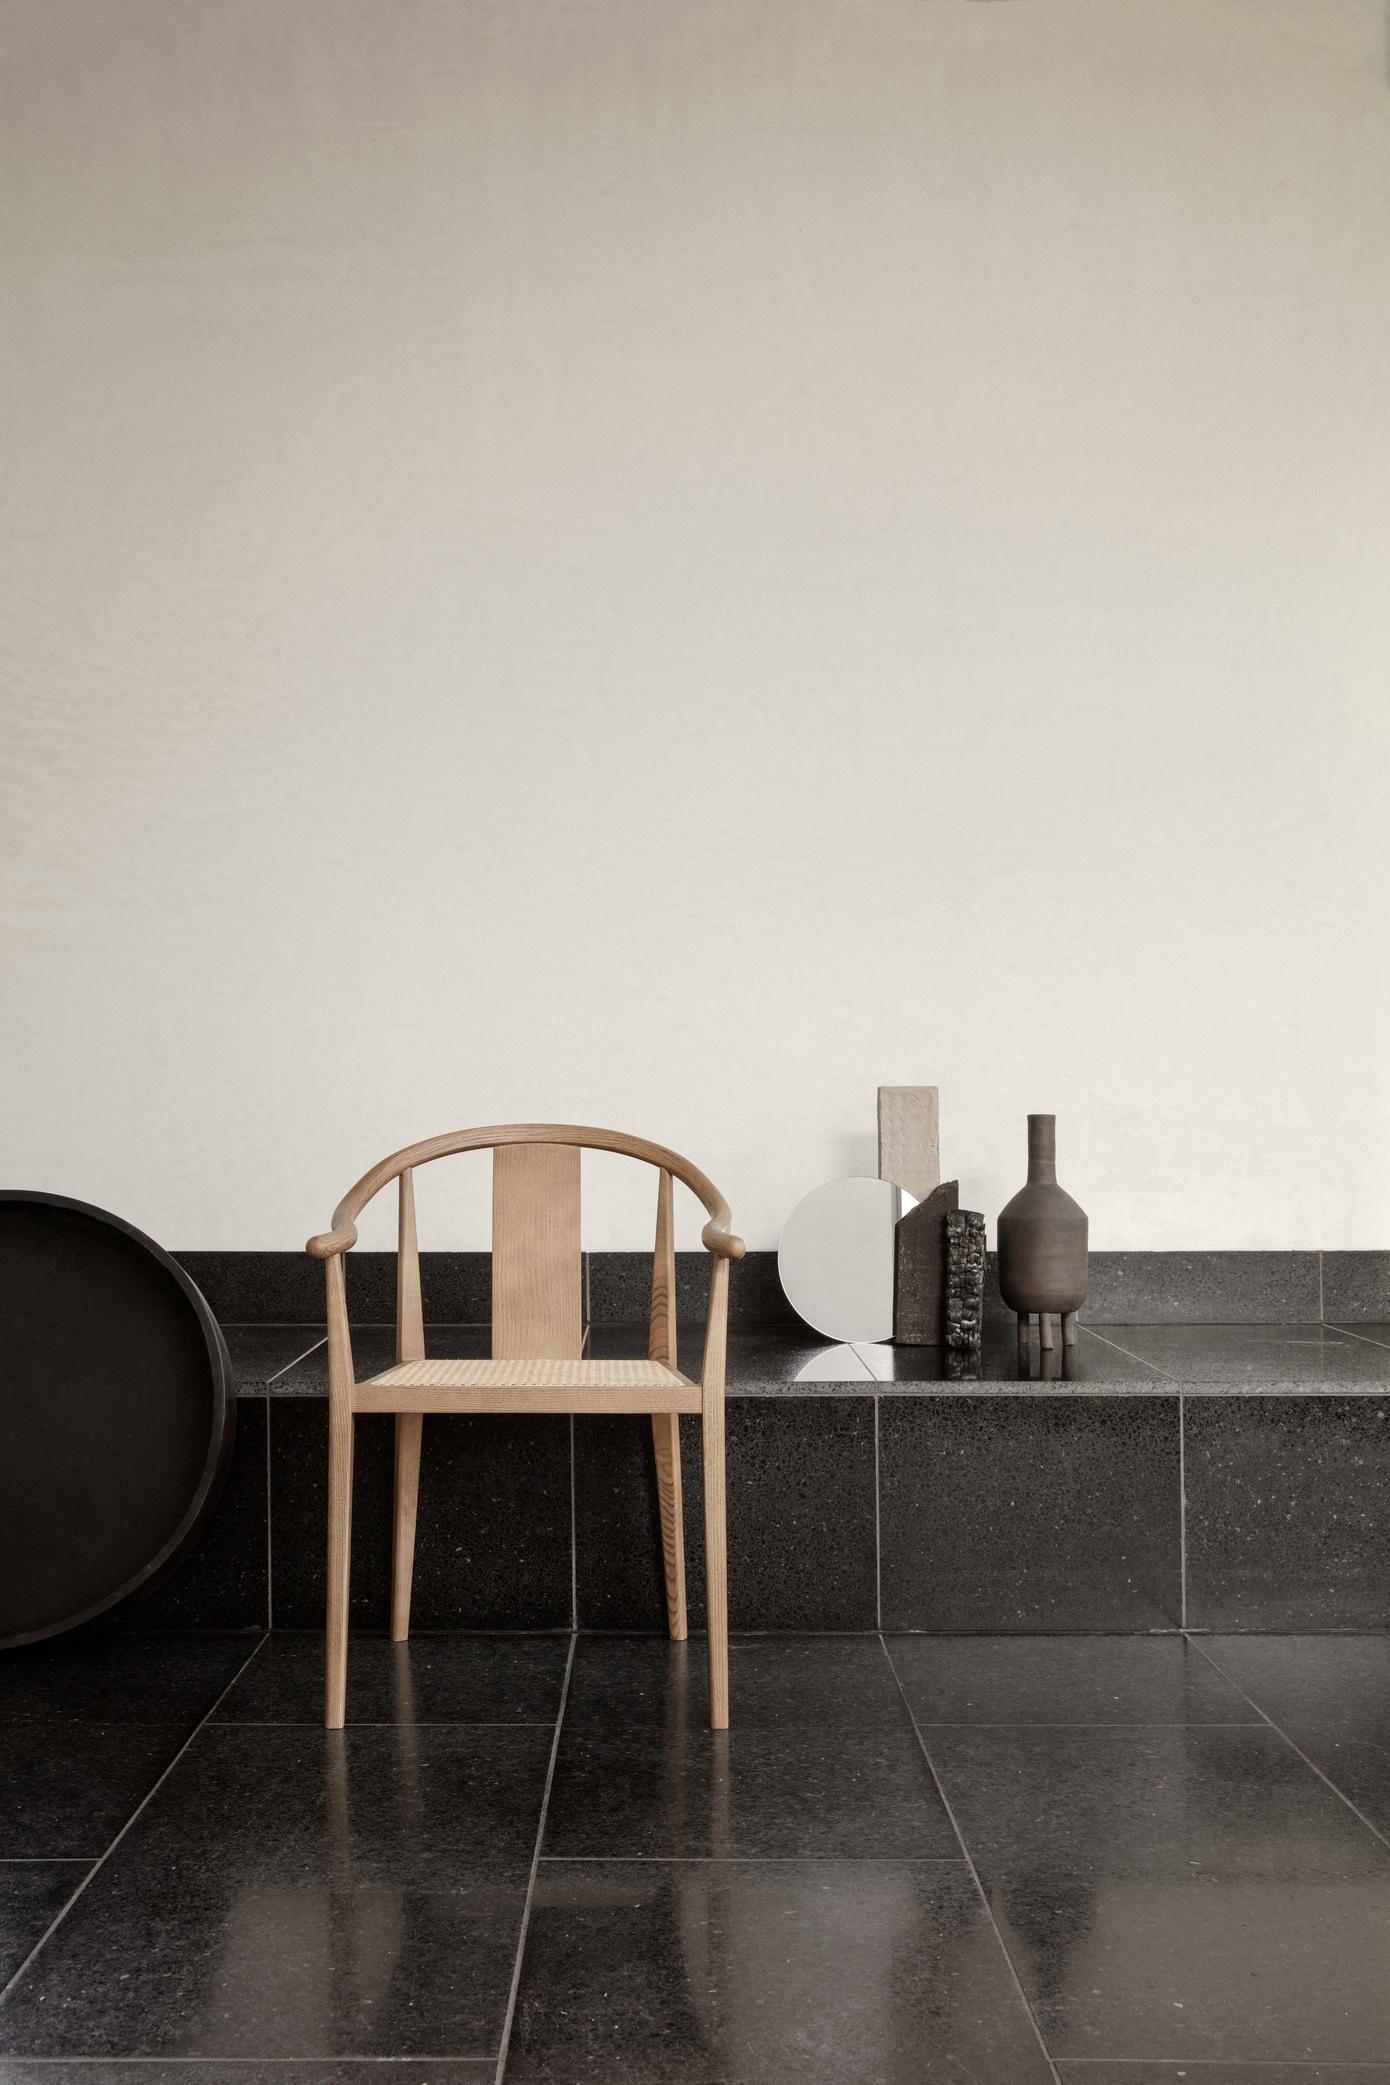 Skandinavischer Stuhl 'Shanghai' von Norr11
Entworfen von Rune Krojgaard & Knut Bendik Humlevik, 2011

Modell auf dem Bild: 
Rahmen: Eiche Schwarz
Sitz: Natürliches Rattan
Erhältlich auch mit Papierkordel, französischem Rattan oder